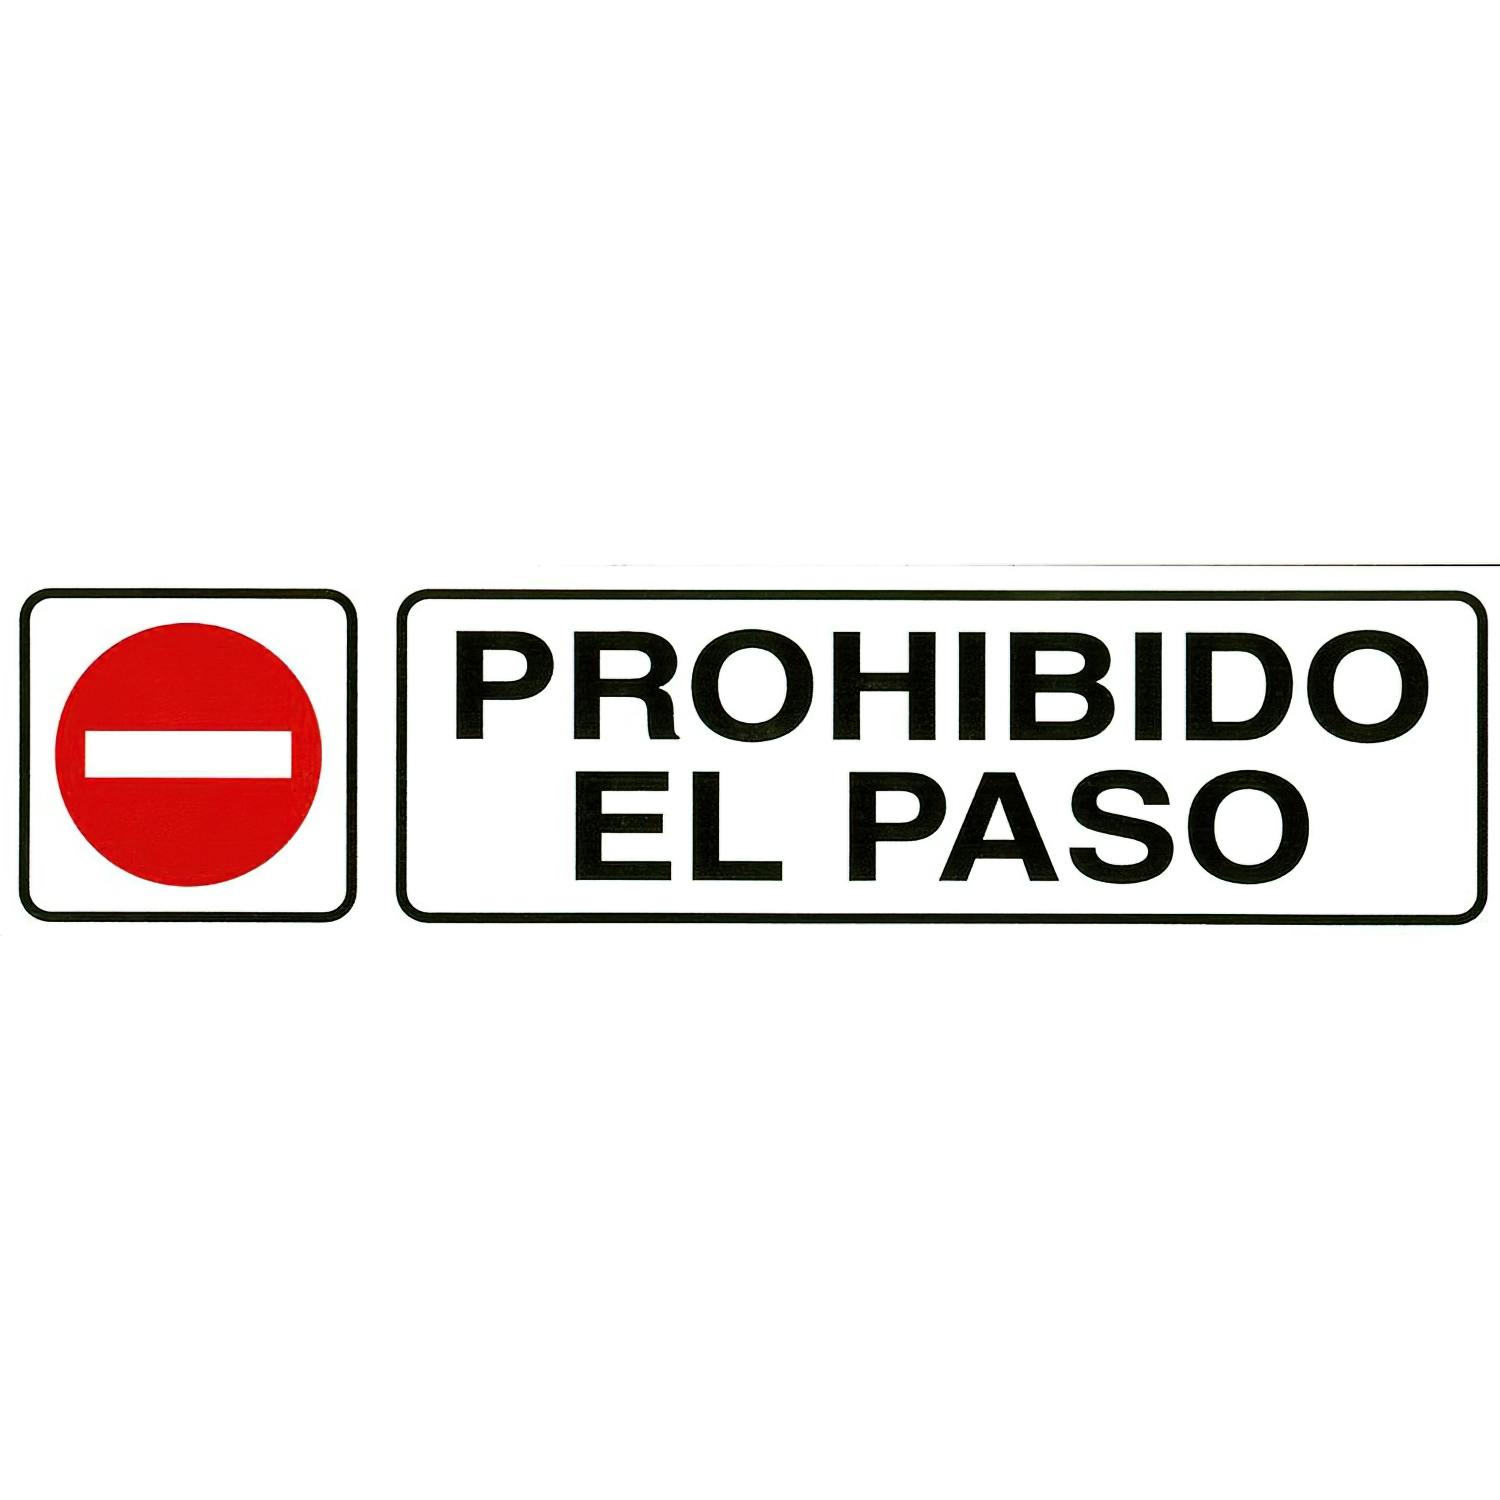 Cartel Prohibido El Paso 30x21 cm.